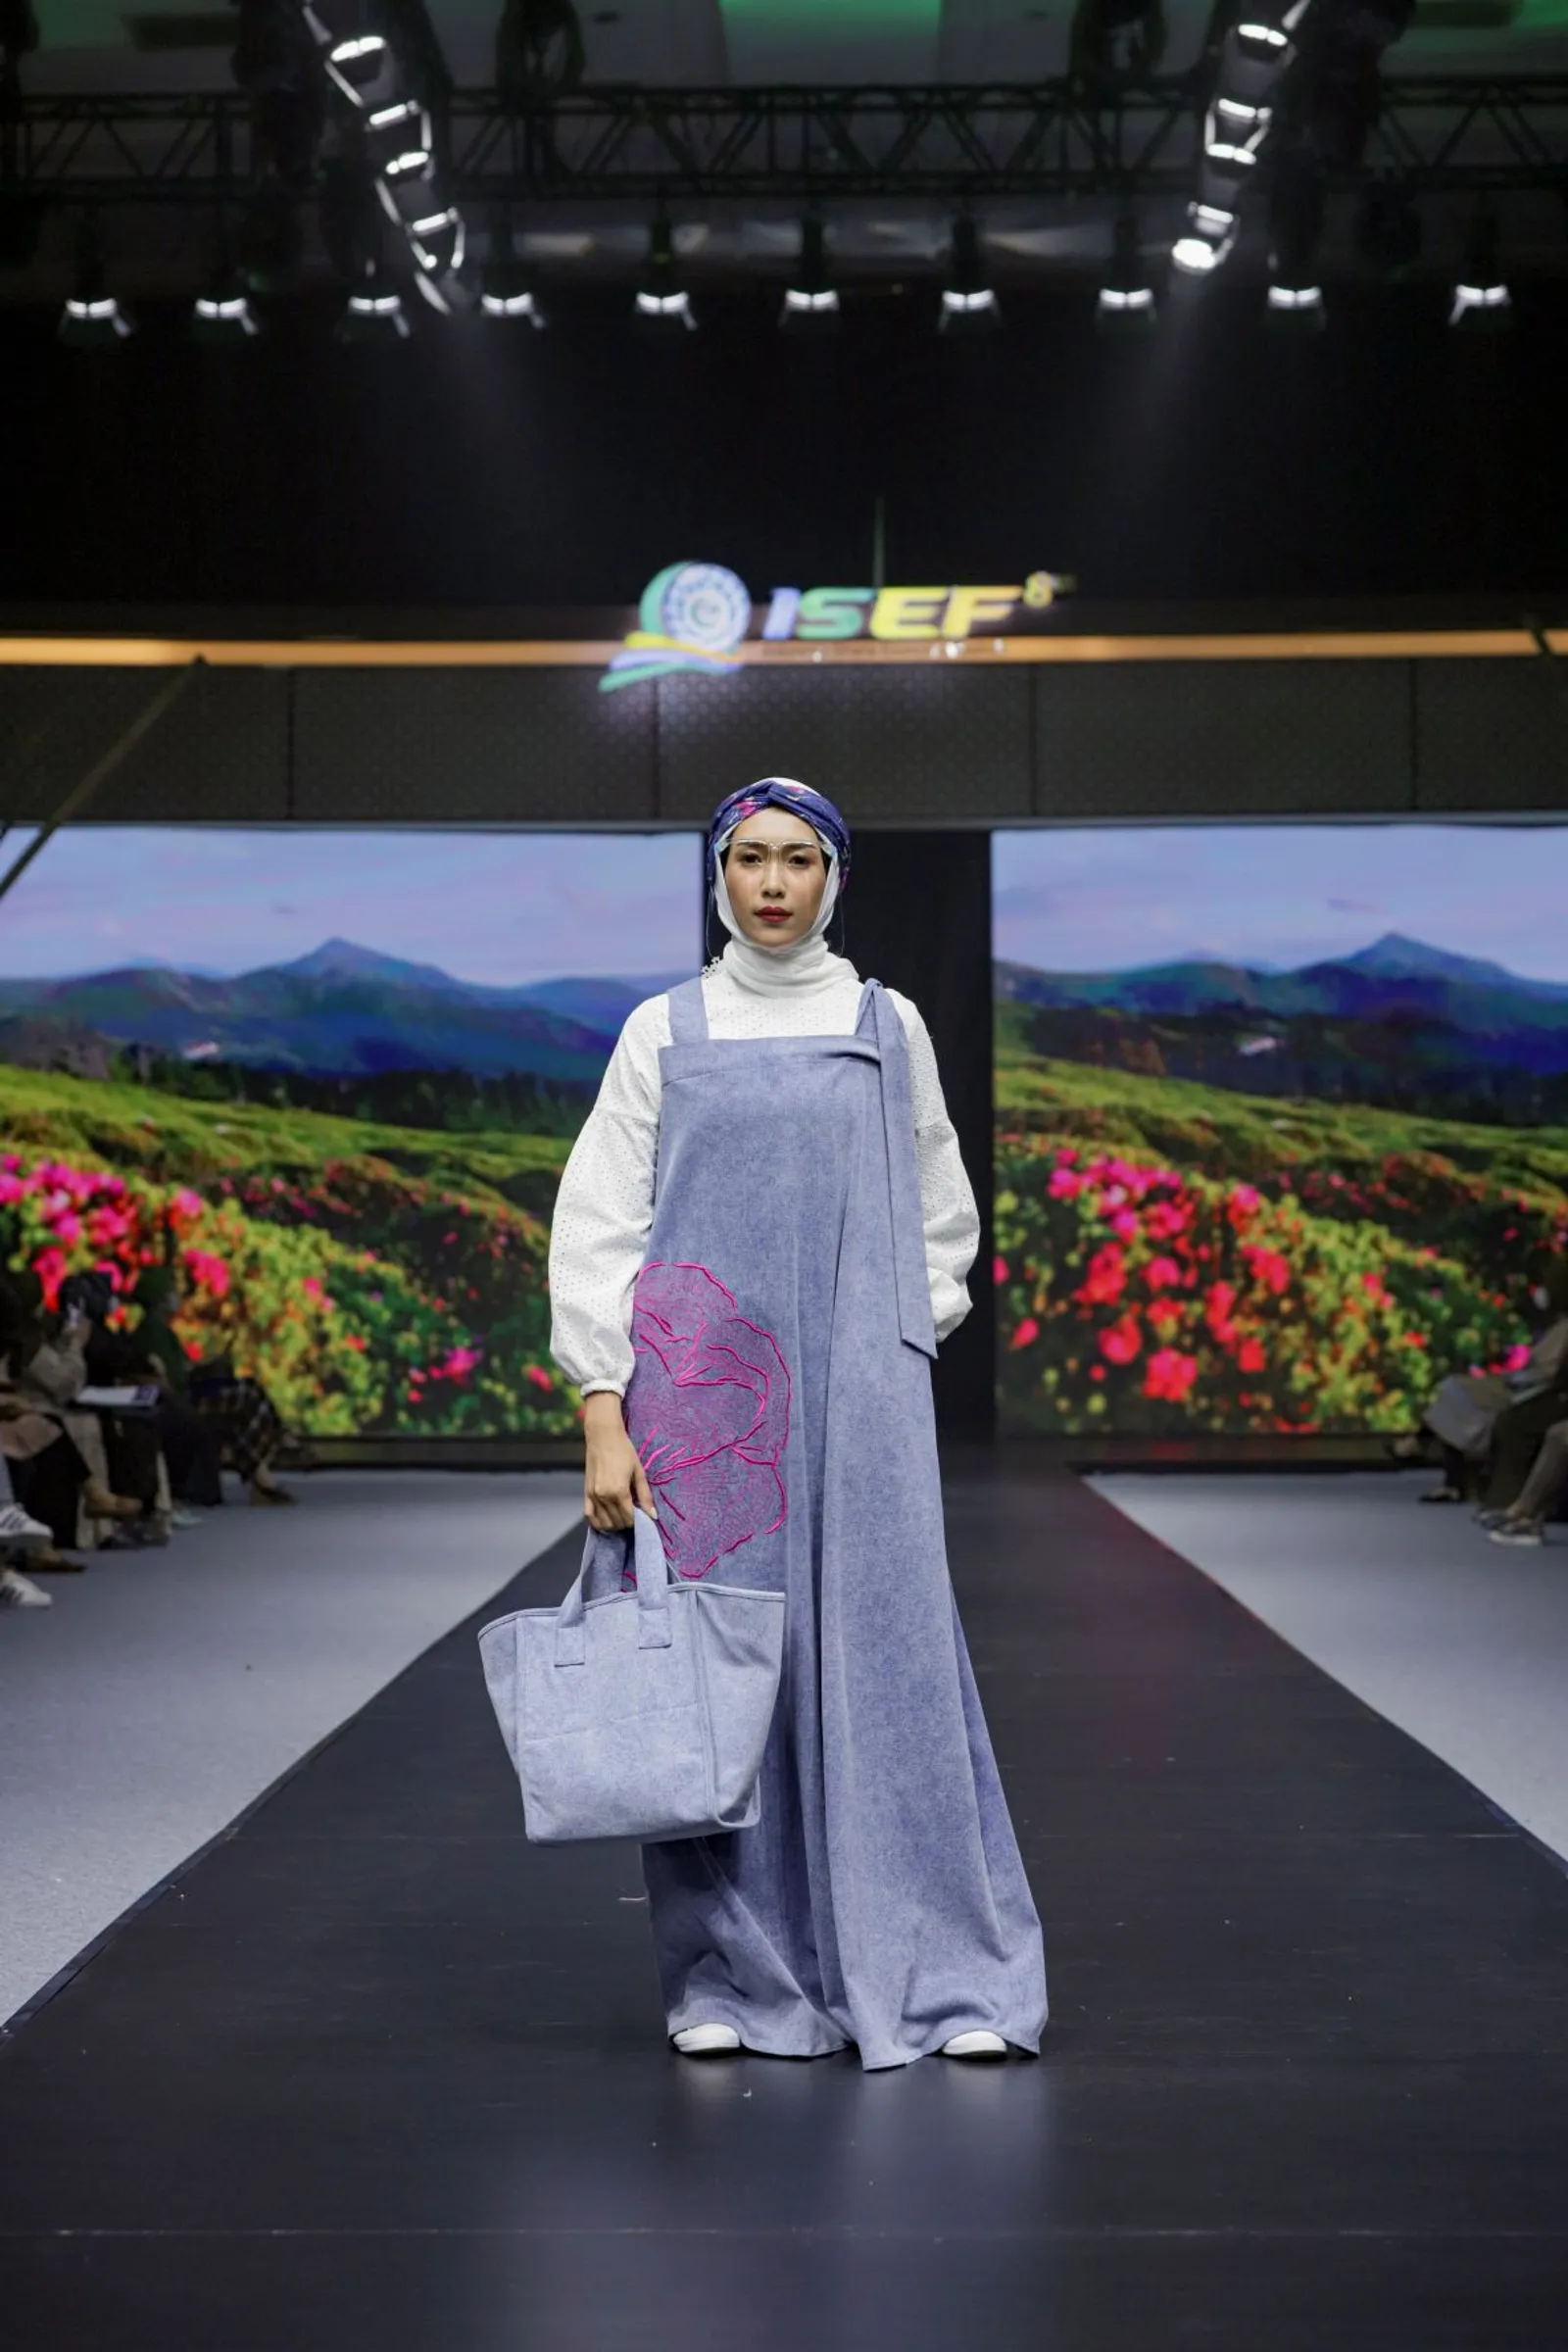 ISEF 2021 Hadirkan Sustainable Fashion Show dari 157 Desainer